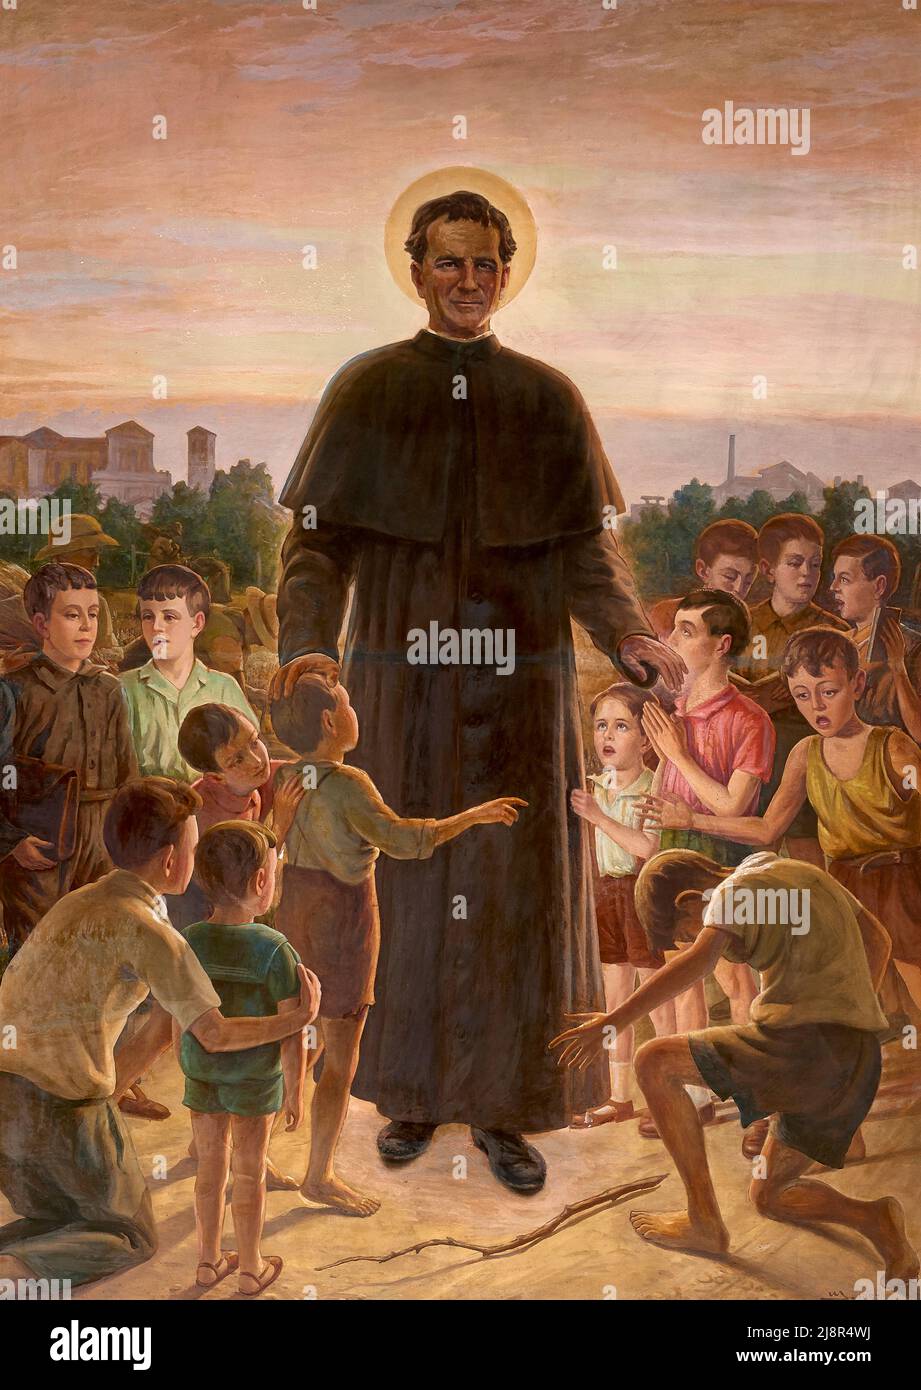 San Giovanni Bosco con i fanciulli - tempera su tavola - Mario Umberto Soriani - 1957 - Melara (RO),Italia, chiesa di S. Materno Stockfoto